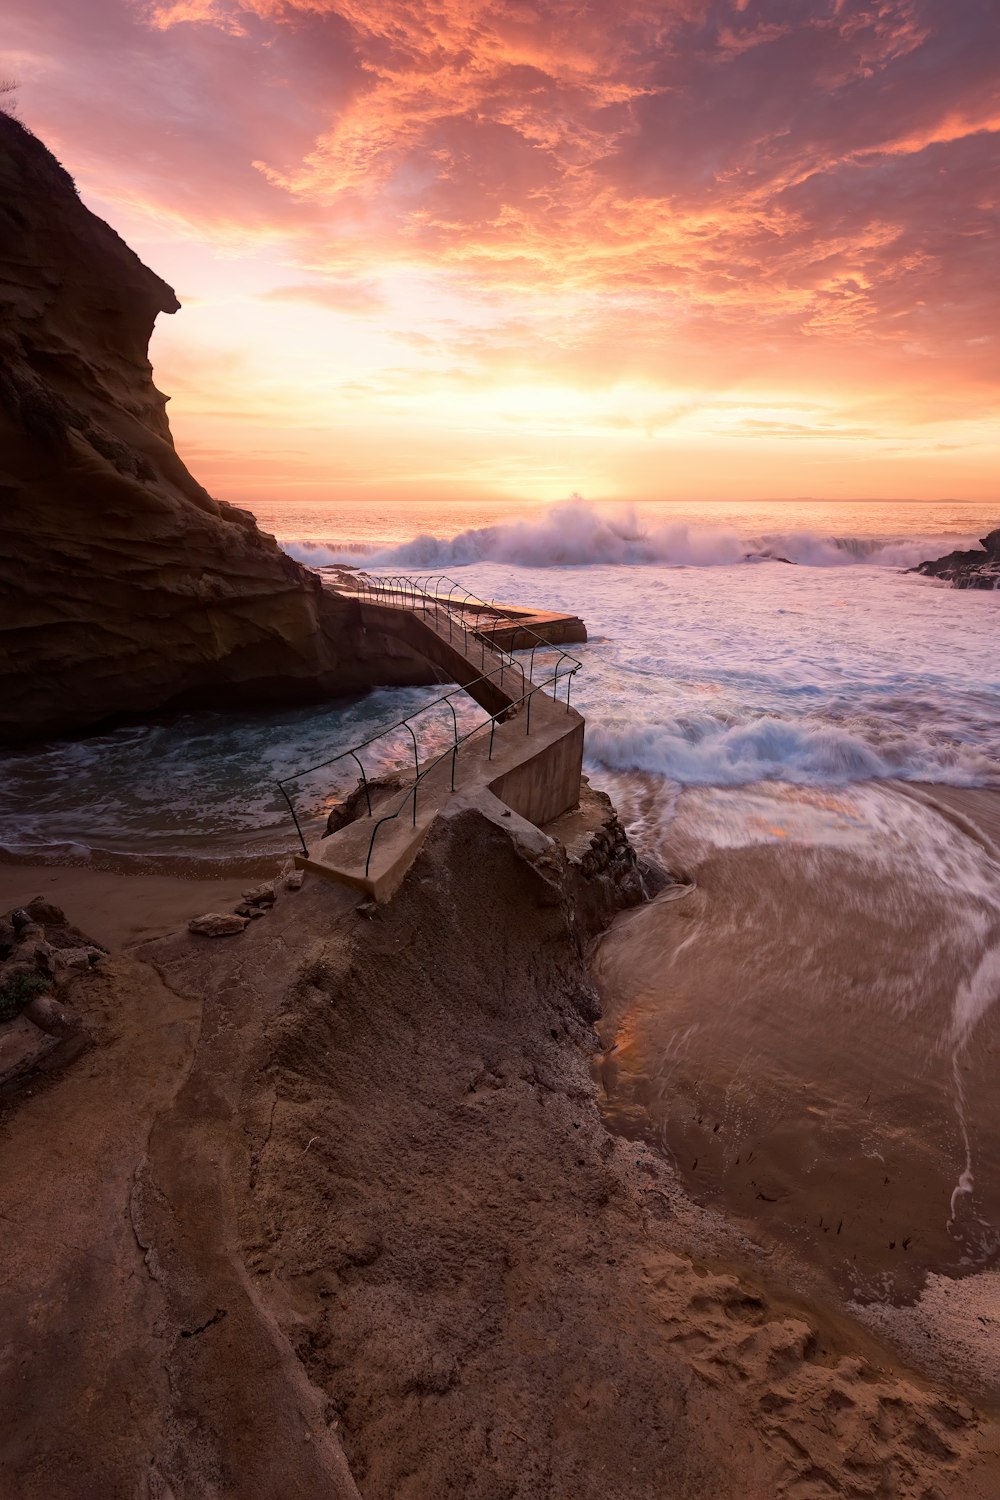 onde che si infrangono sulla costa rocciosa durante il tramonto